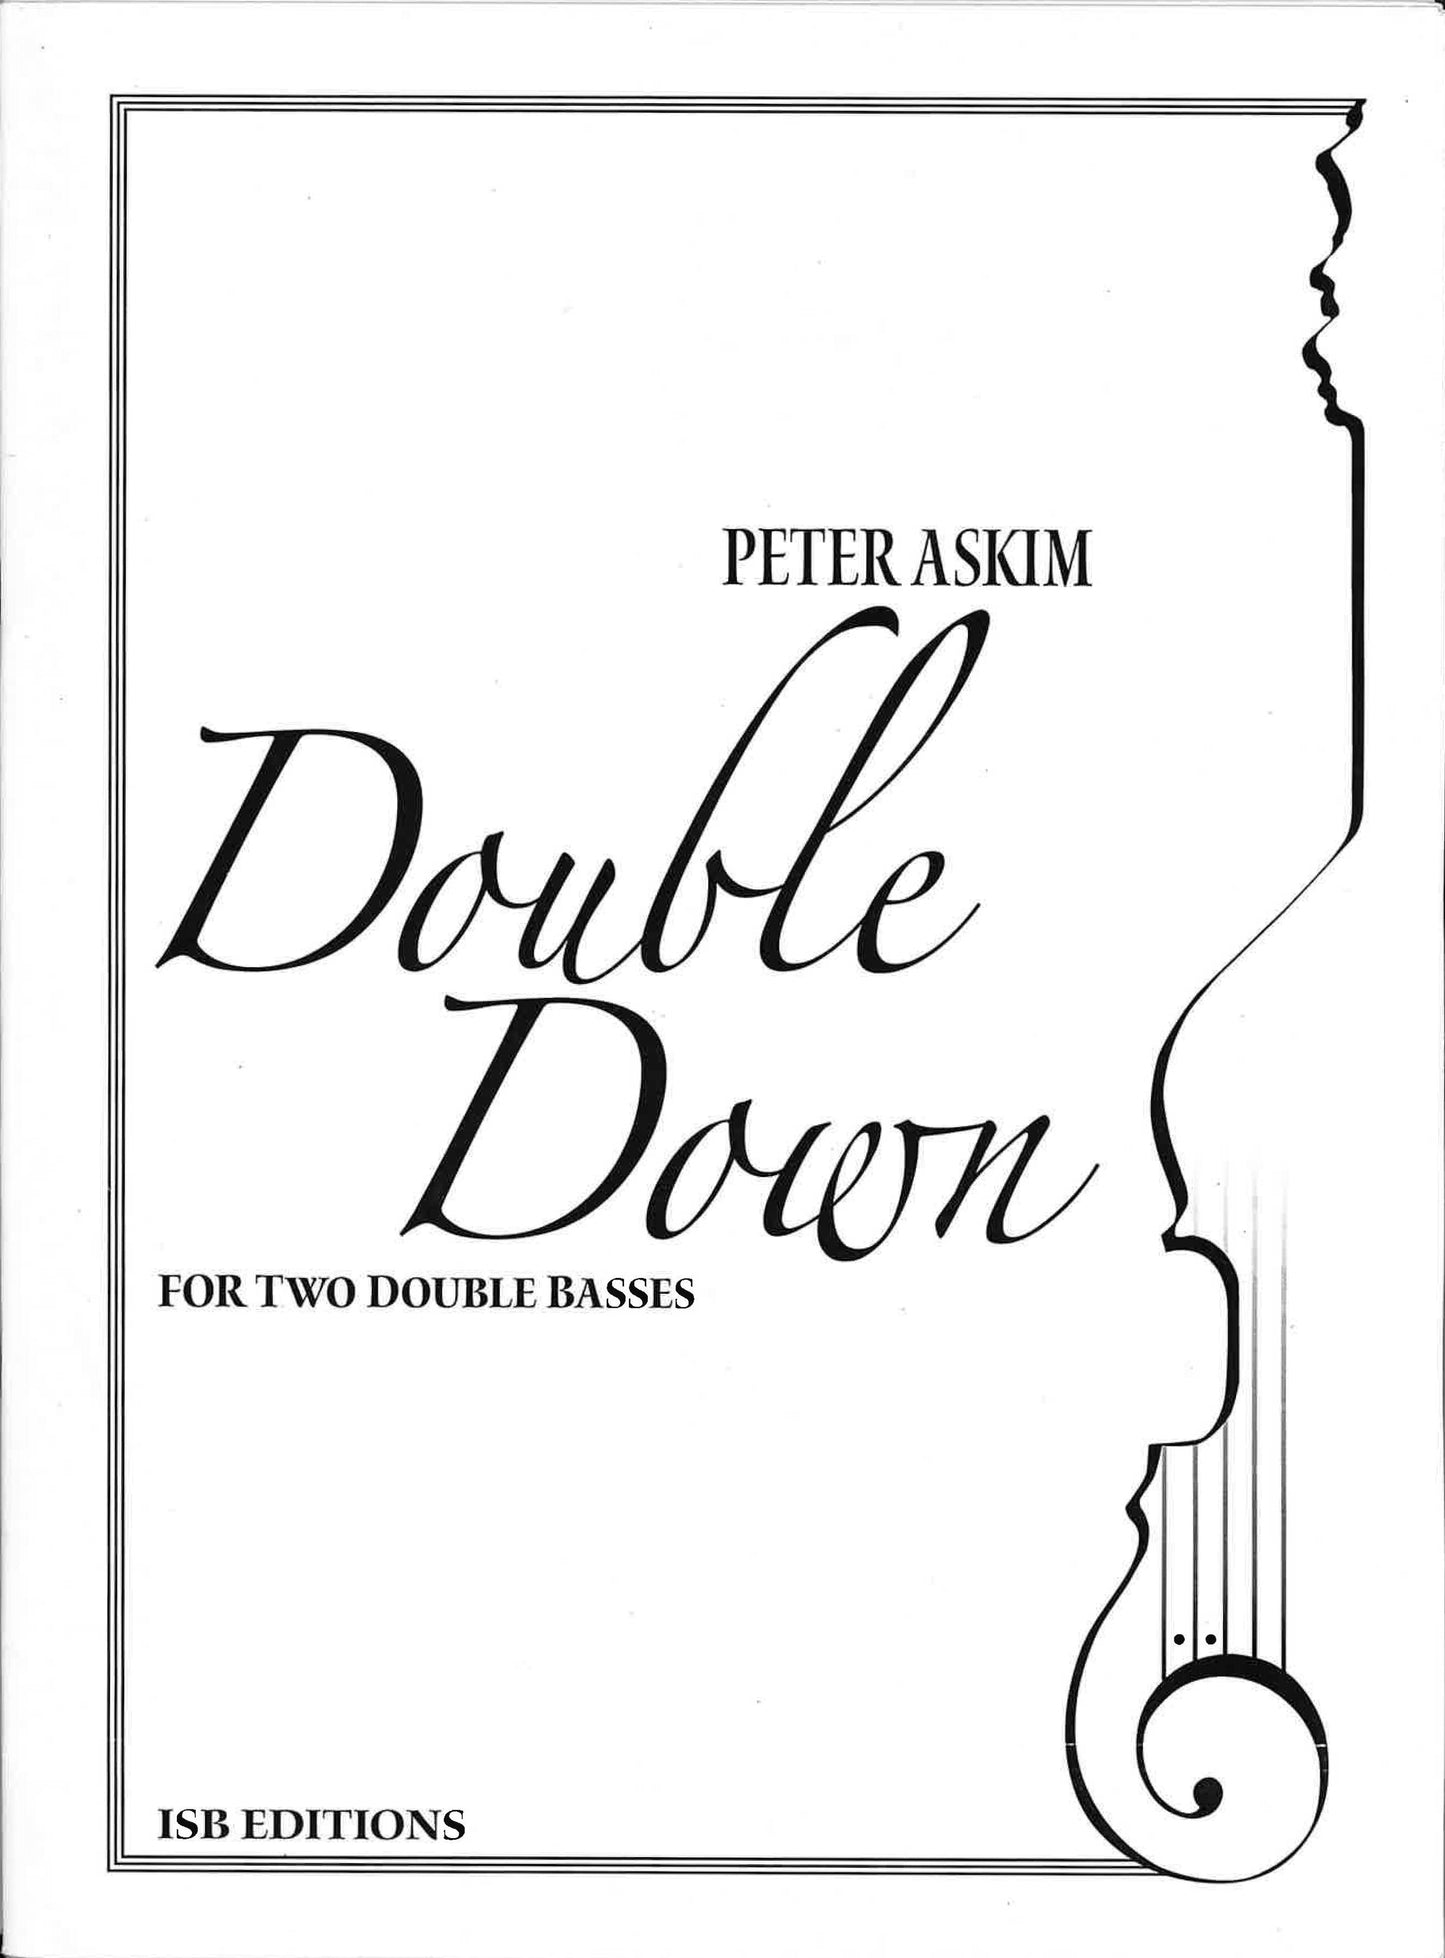 Askim: Double Down